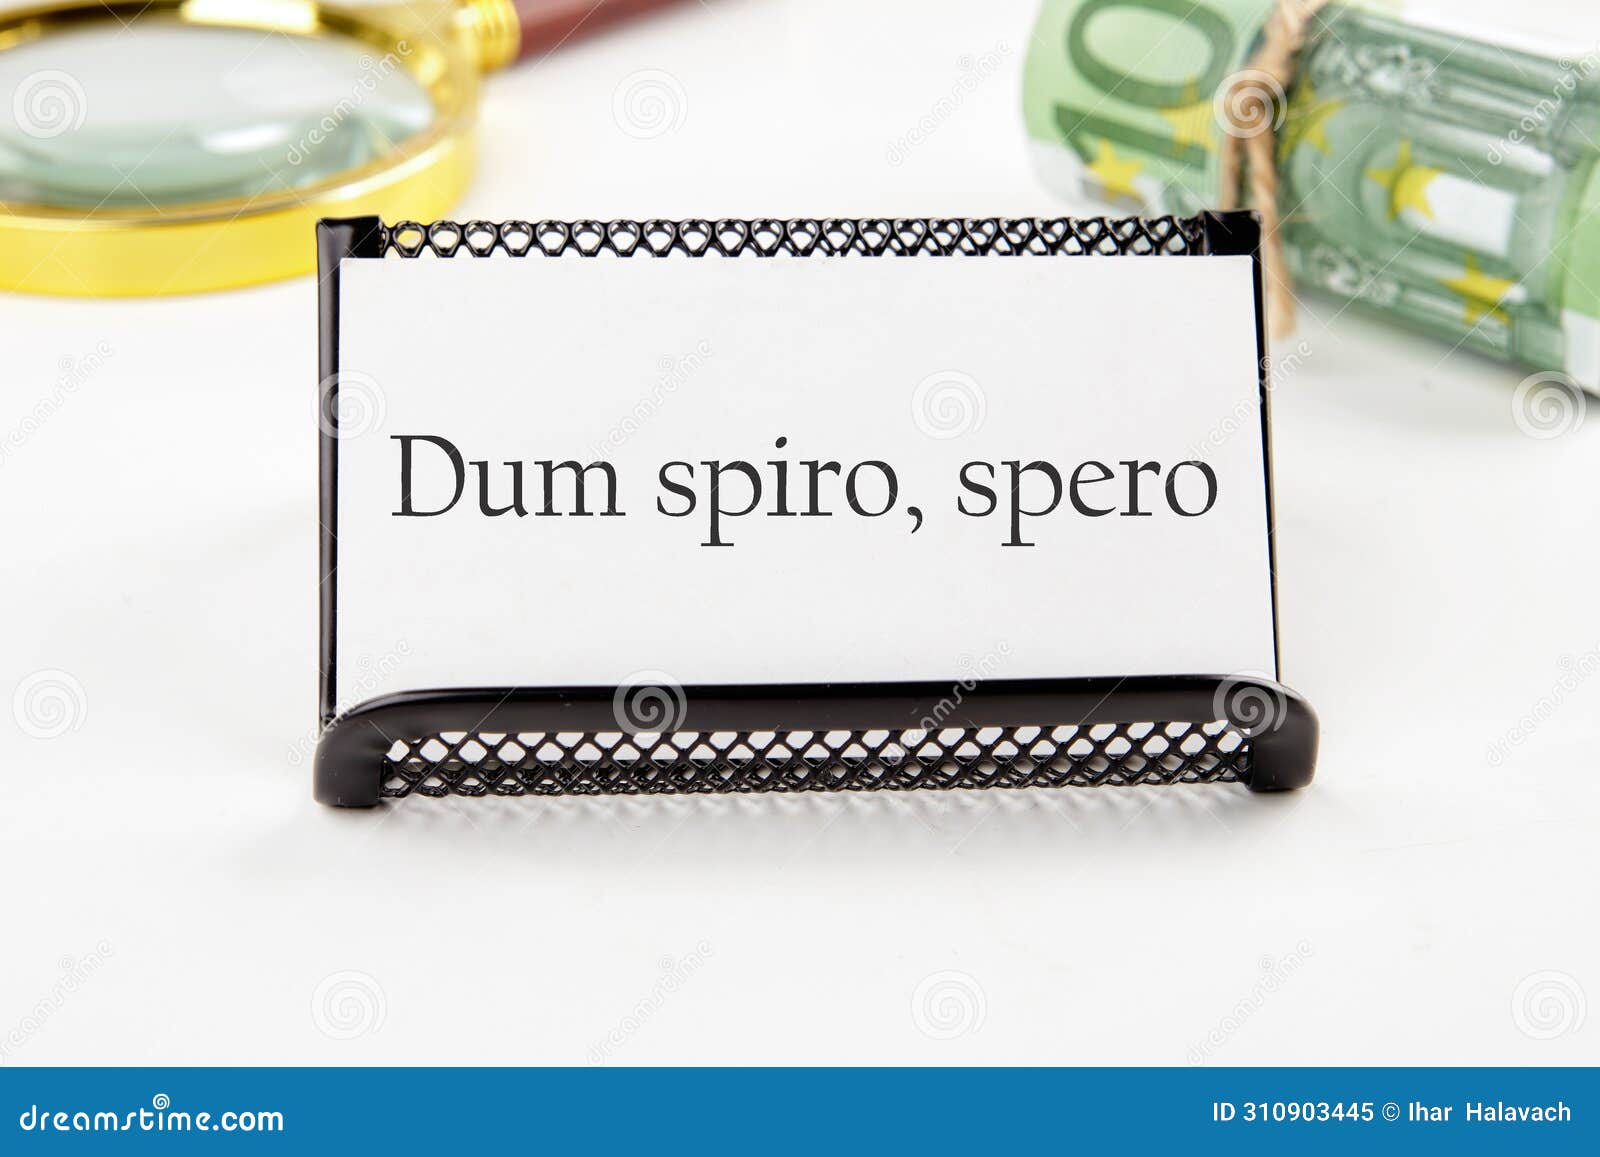 dum spiro spero - latin phrase means while i breath,